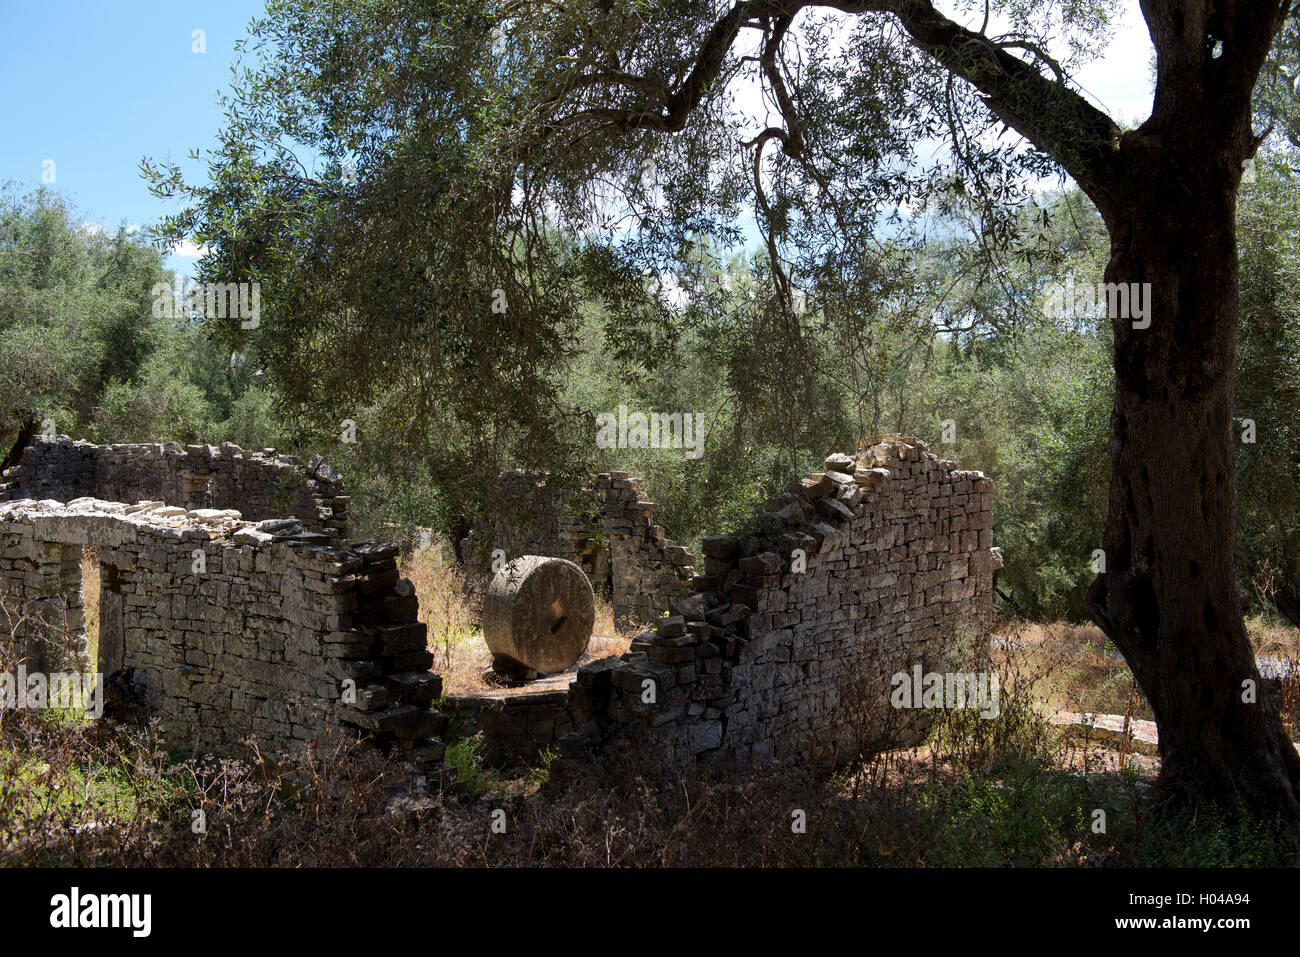 Les ruines d'une ancienne presse à olives dans une oliveraie à Fontana sur l'île de Paxos, les îles Ioniennes, Grèce, Europe Banque D'Images